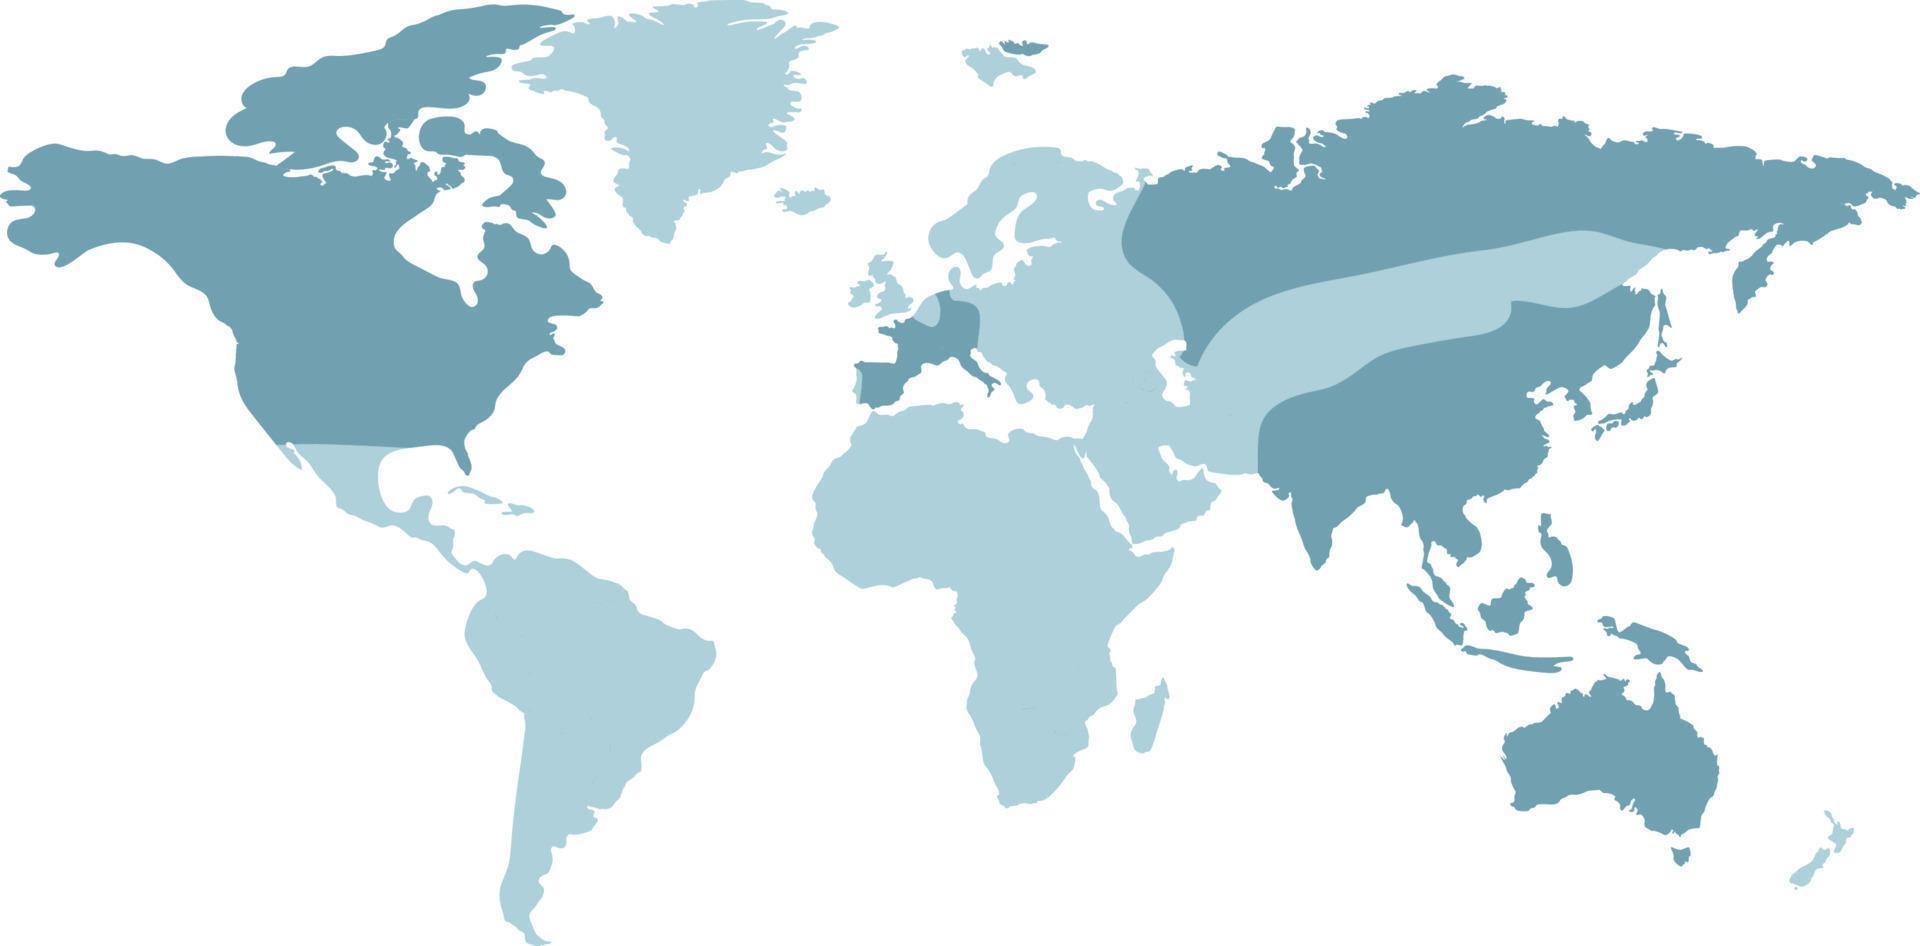 Weltkartenvorlage mit Kontinenten, Nord- und Südamerika, Europa und Asien, Afrika und Australien vektor